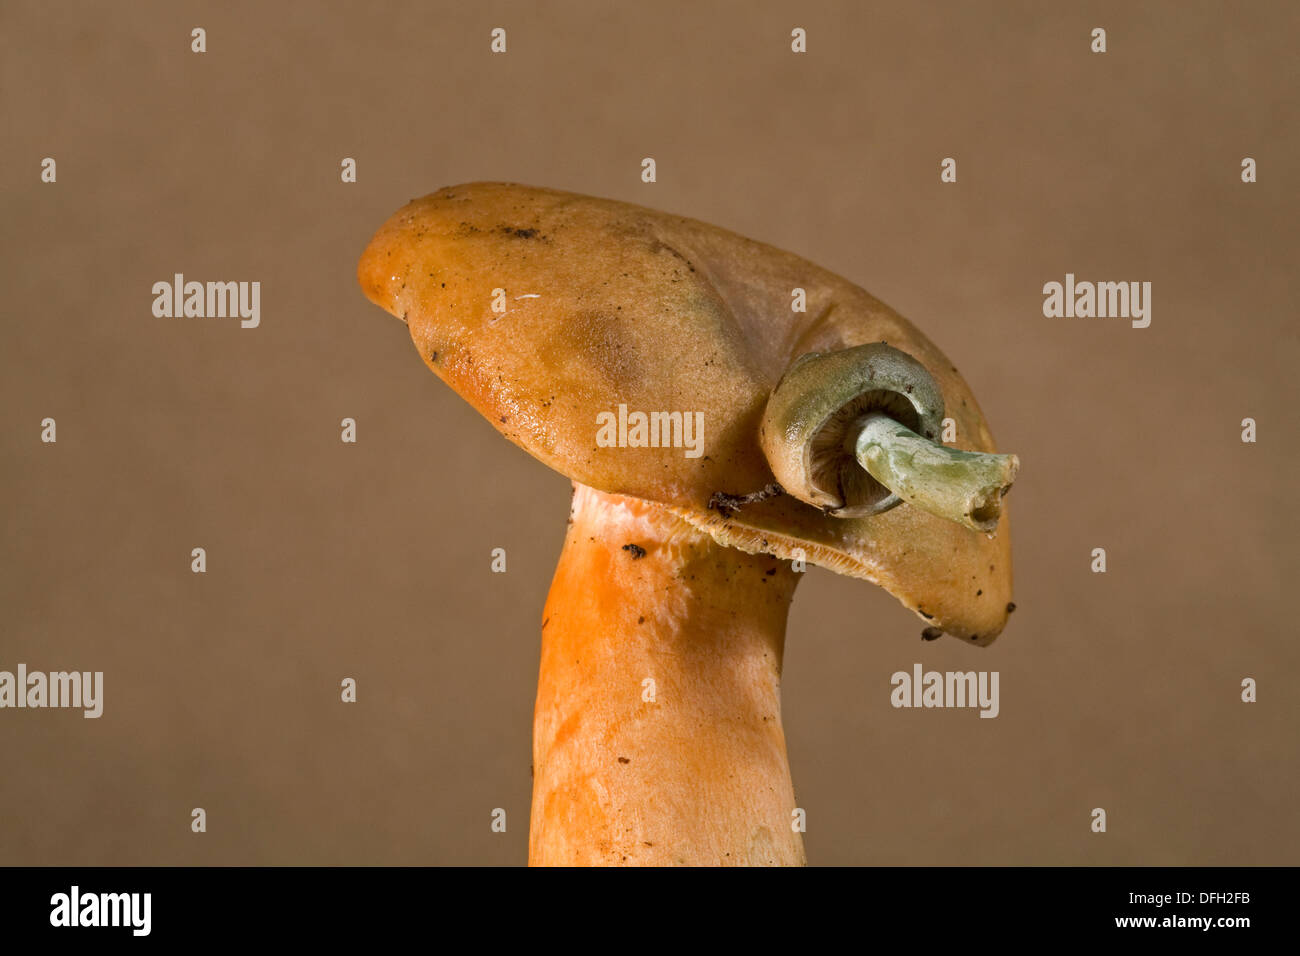 Un esempio di mutazione Rosecomb su un fungo selvatico, il Lactarius salmonicolor., il fungo più piccolo che cresce dalla sua testa è la mutazione. Foto Stock